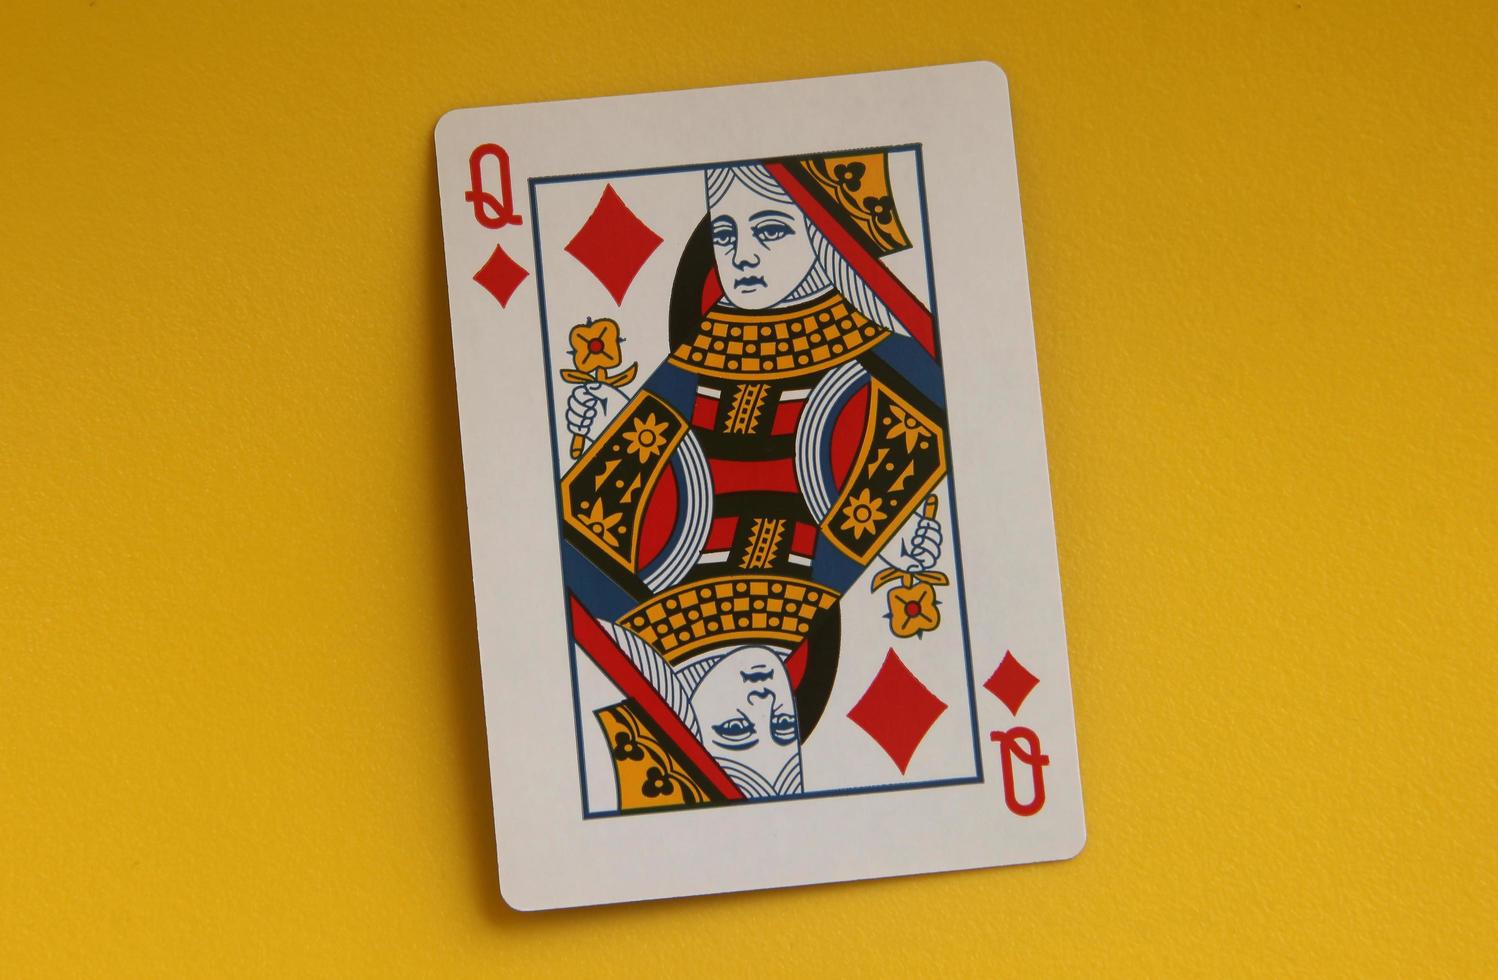 Jakarta, Indonesië - februari 24e, 2023 - koningin enkel en alleen. een gemeenschappelijk spelen kaarten voor poker, gokken, of alleen maar voor pret vermaak doeleinden. voorwerp foto geïsoleerd Aan geel achtergrond.